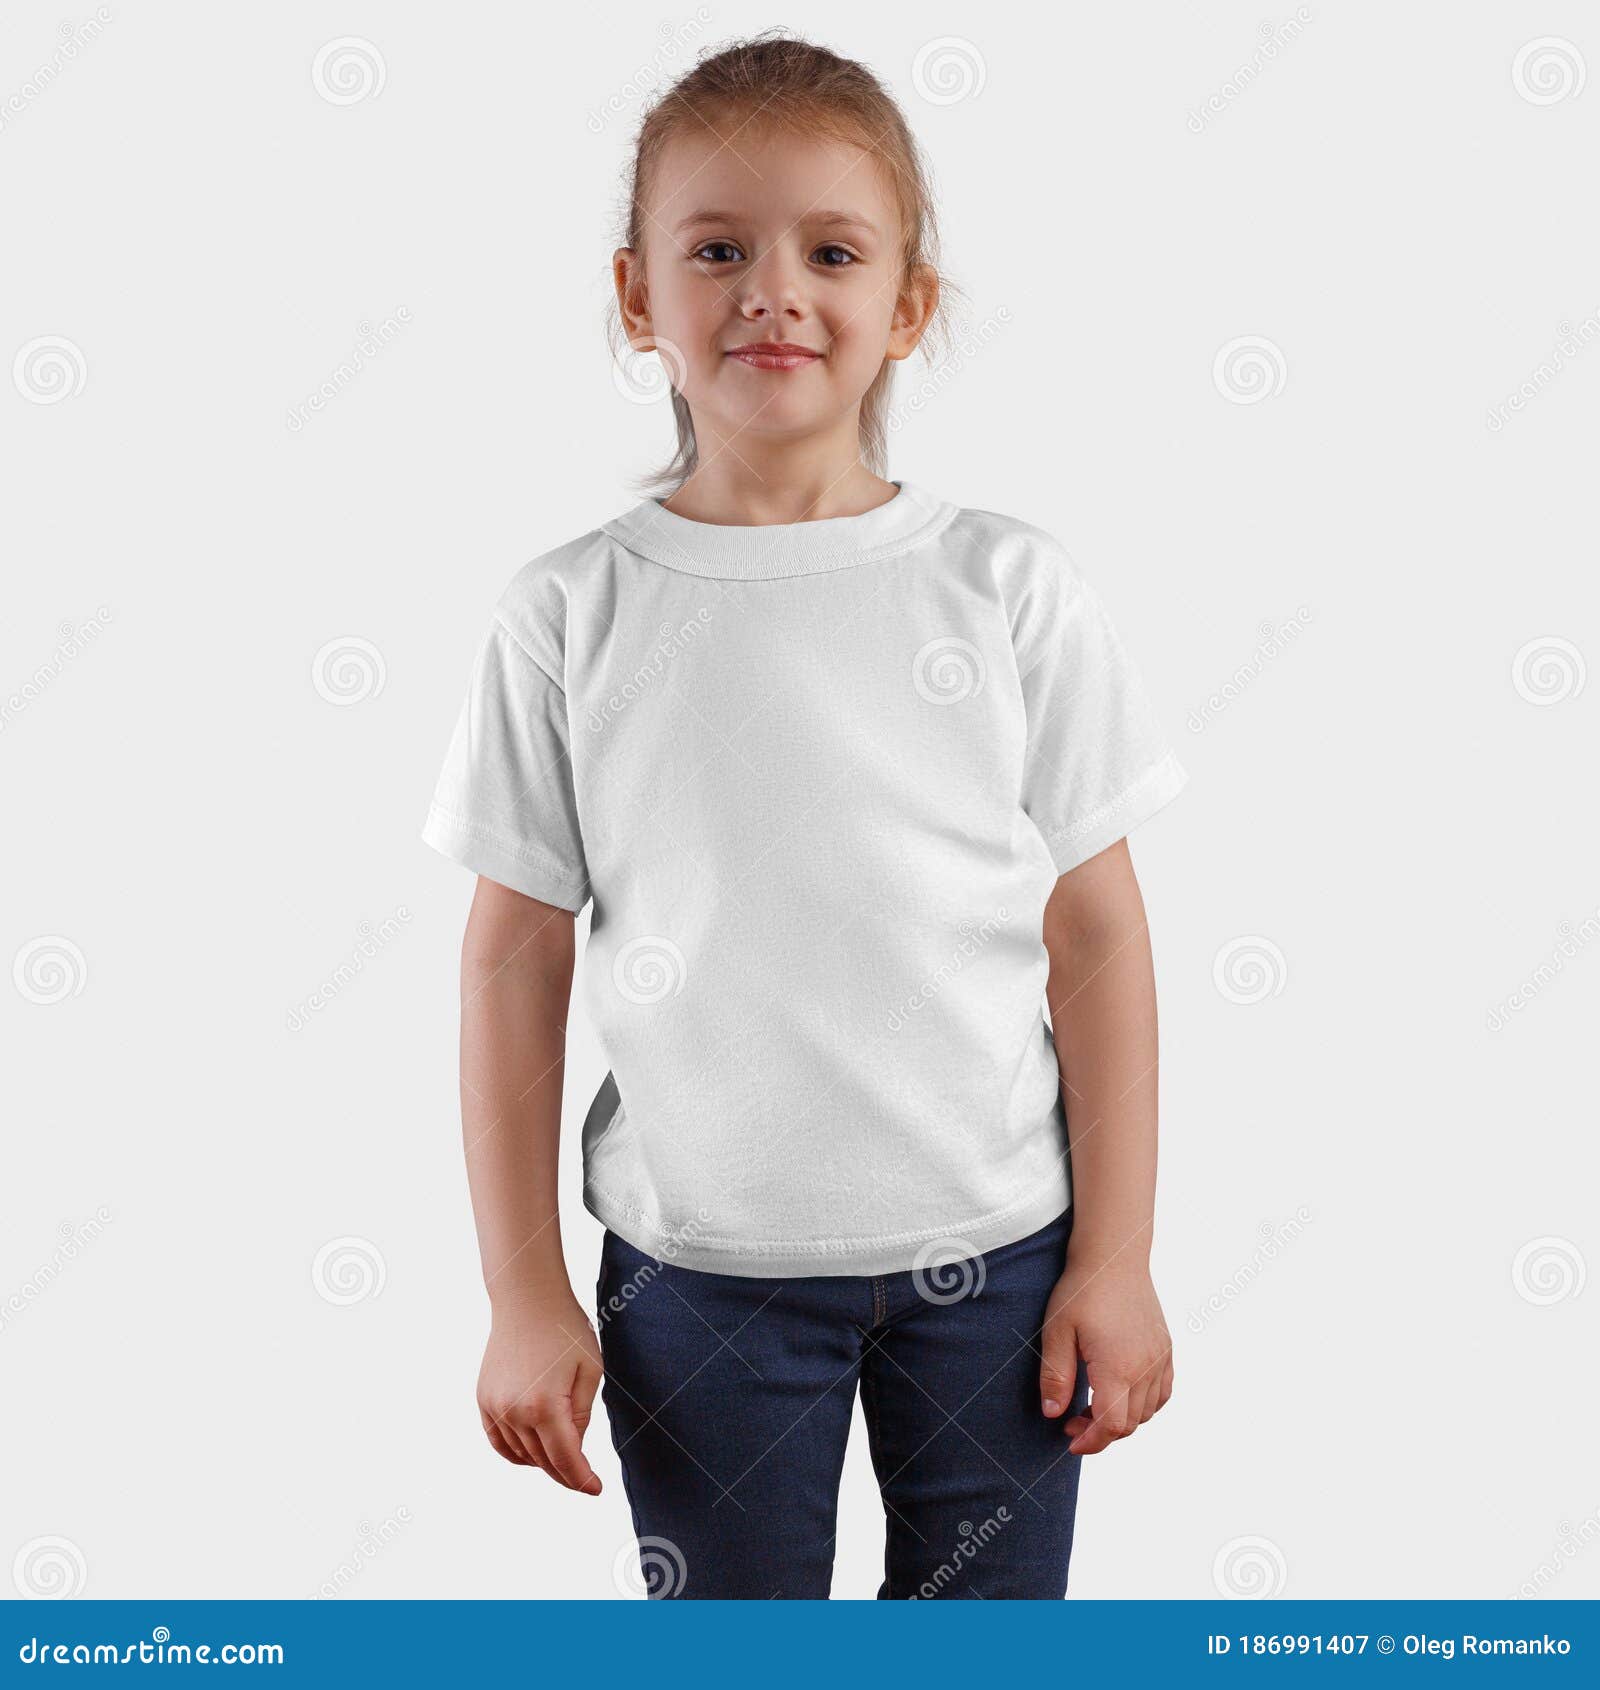 Plantilla Ropa En Blanco Para Presentación De Diseño Y Logo Una Camiseta Blanca En Un Chico Lindo Para Publicidad Imagen de archivo - Imagen de manera, ropa: 186991407